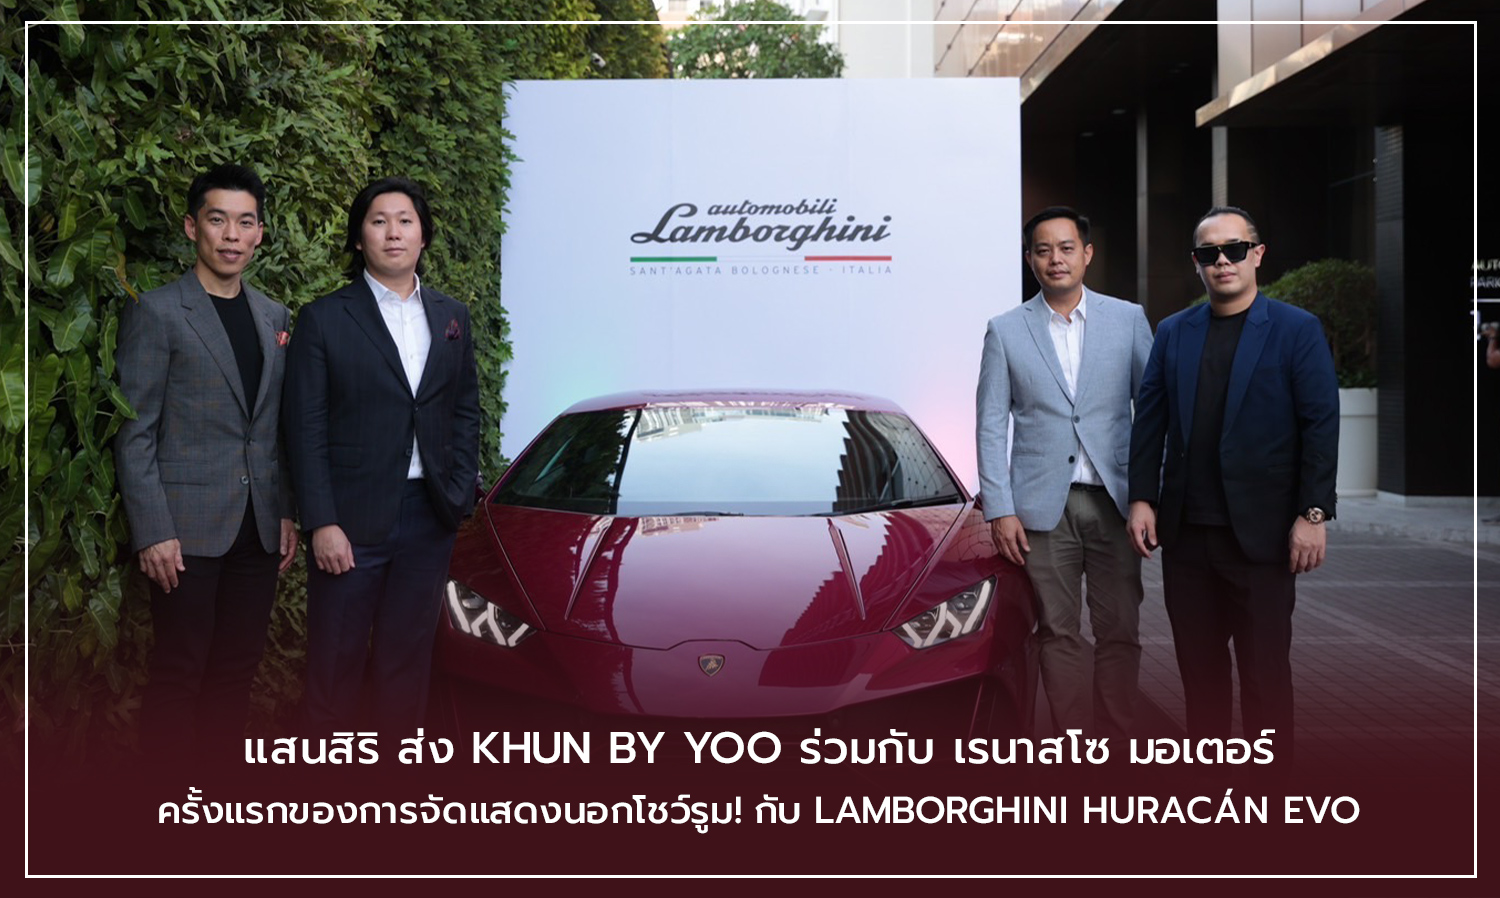 แสนสิริ ส่ง KHUN by YOO ร่วมกับ เรนาสโซ มอเตอร์ ครั้งแรกของการจัดแสดงนอกโชว์รูม! กับ Lamborghini Huracán EVO